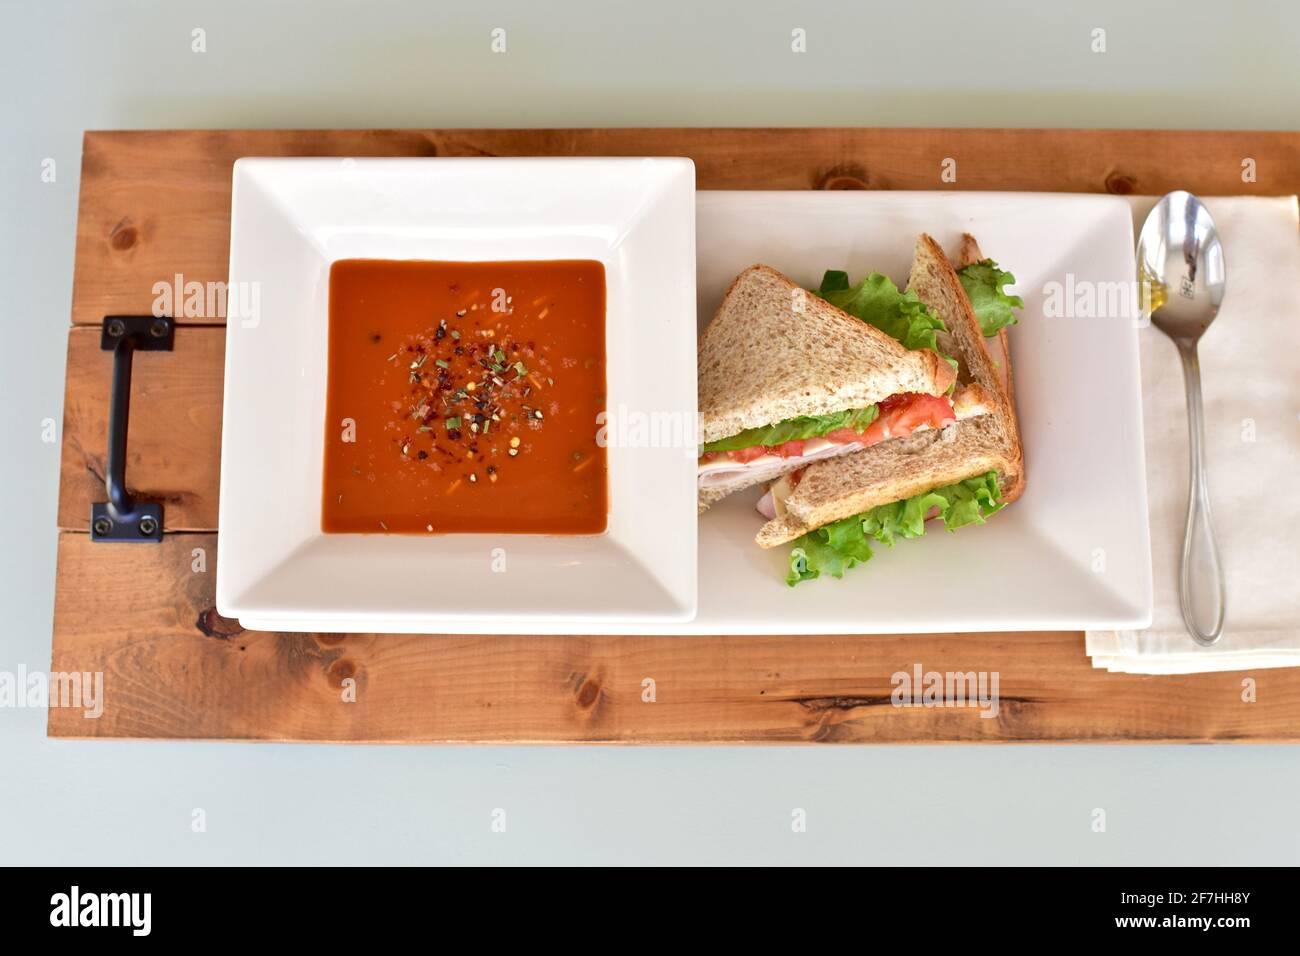 Soupe chaude et sandwich réconfortants pour un déjeuner frais et une alimentation saine. Concept photo, arrière-plan alimentaire, espace de copie Banque D'Images